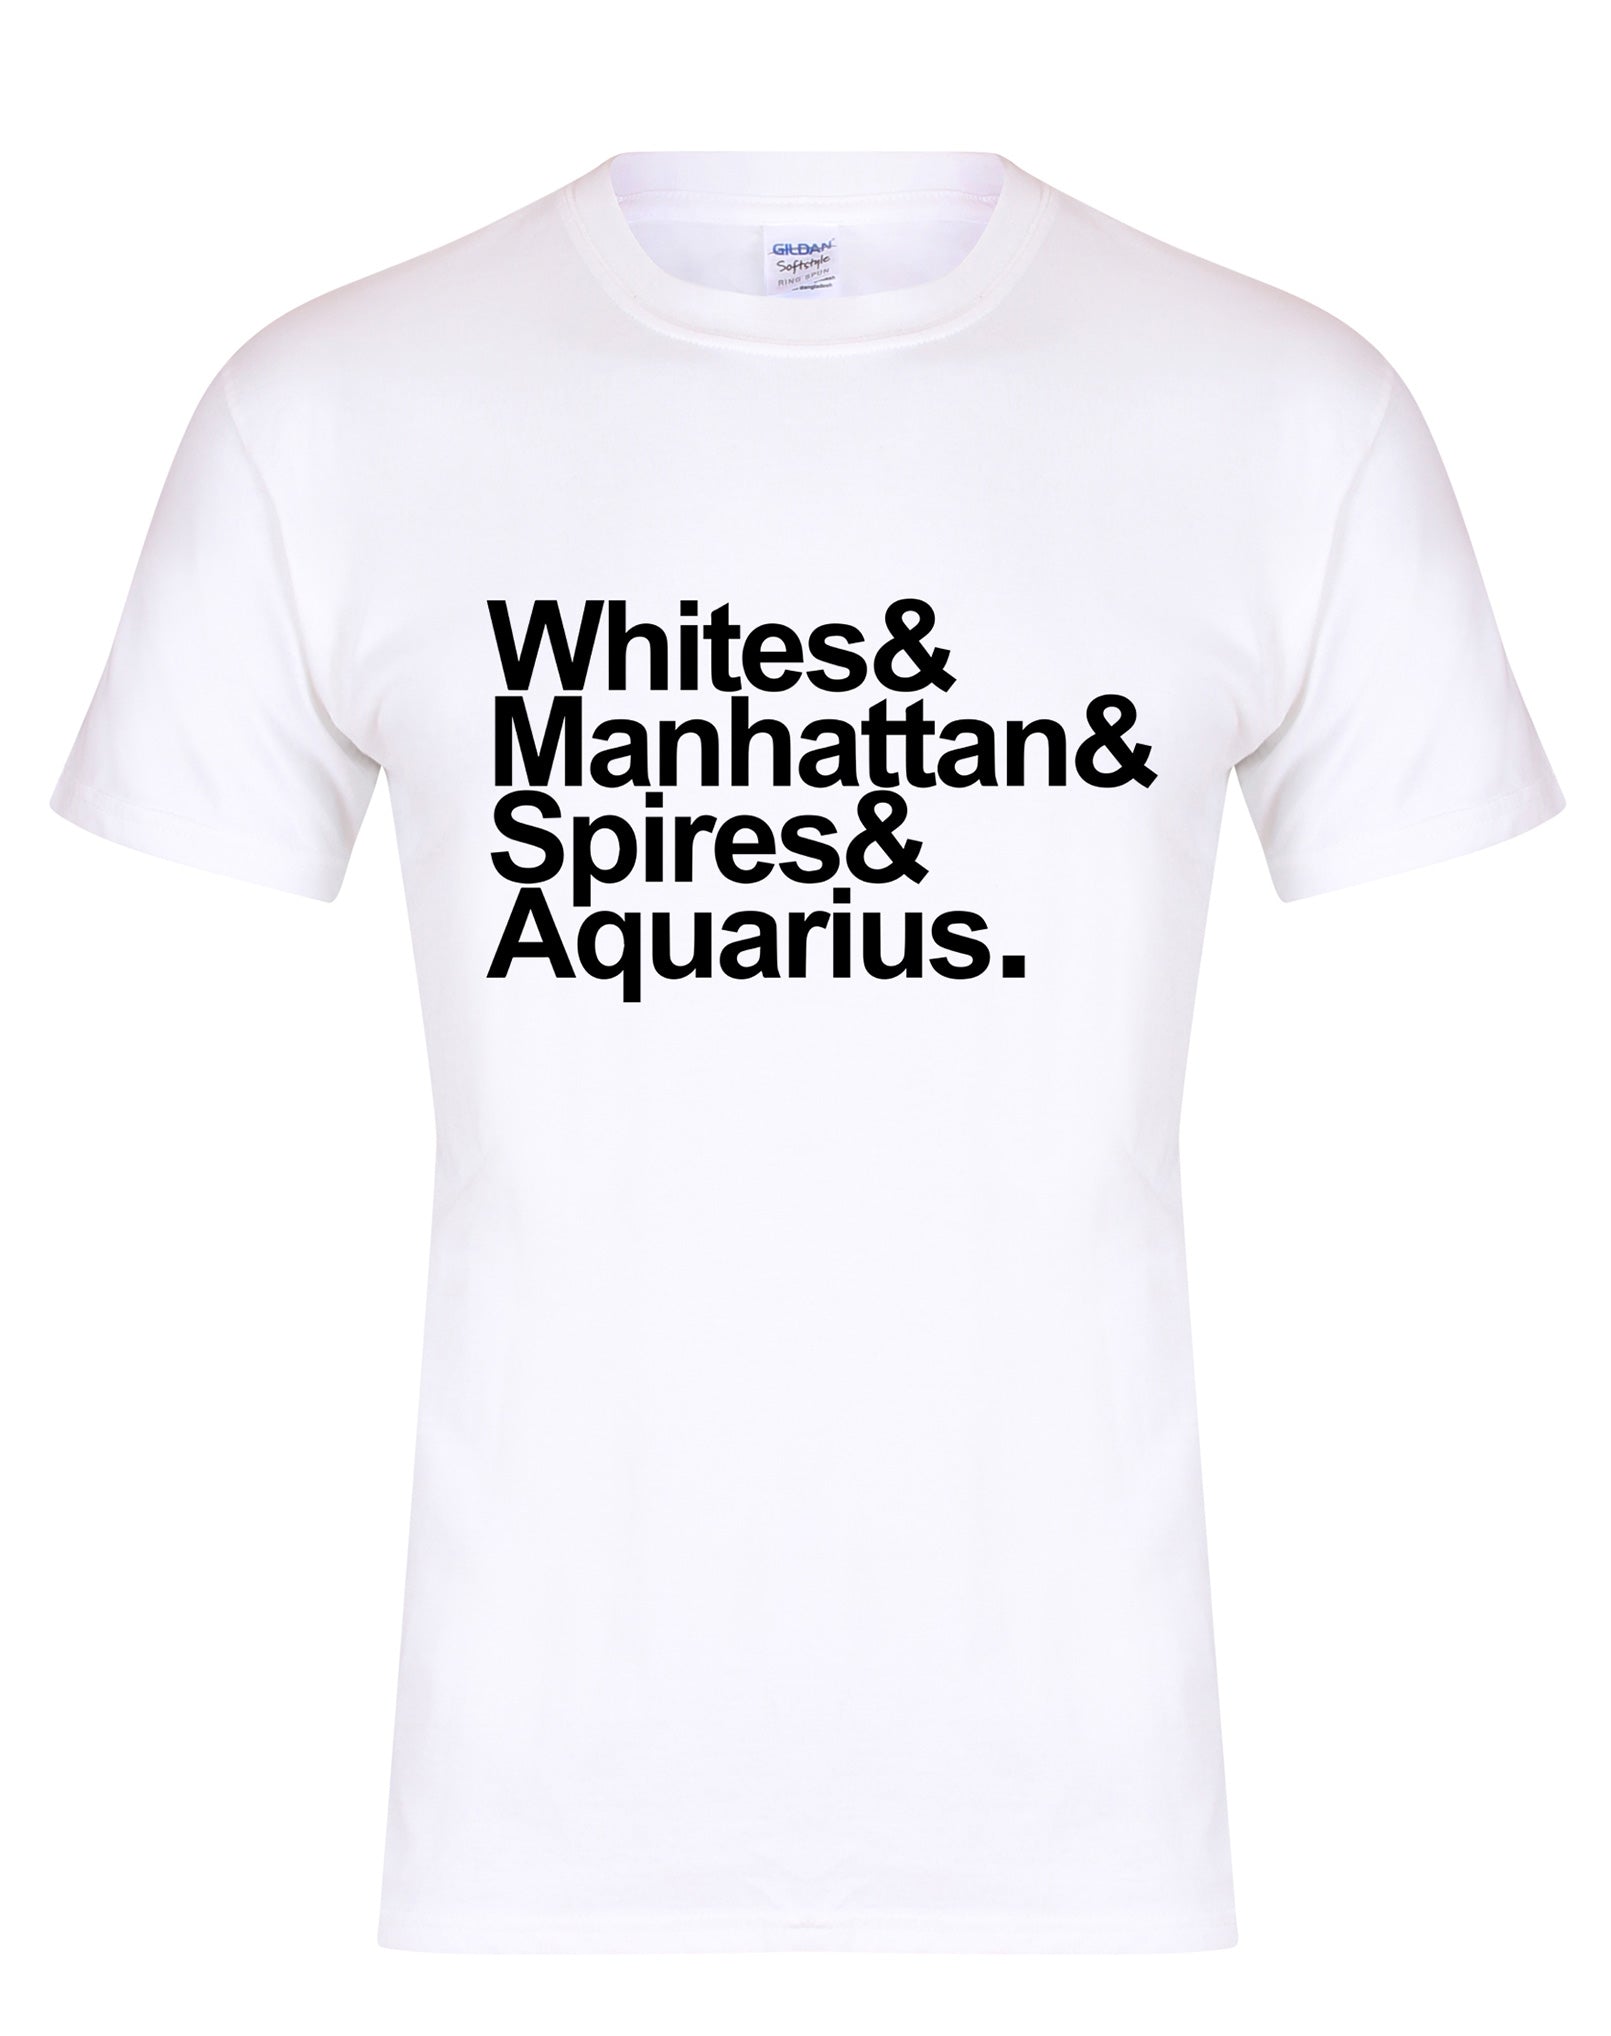 Destination Aquarius unisex fit T-shirt - various colours - Dirty Stop Outs